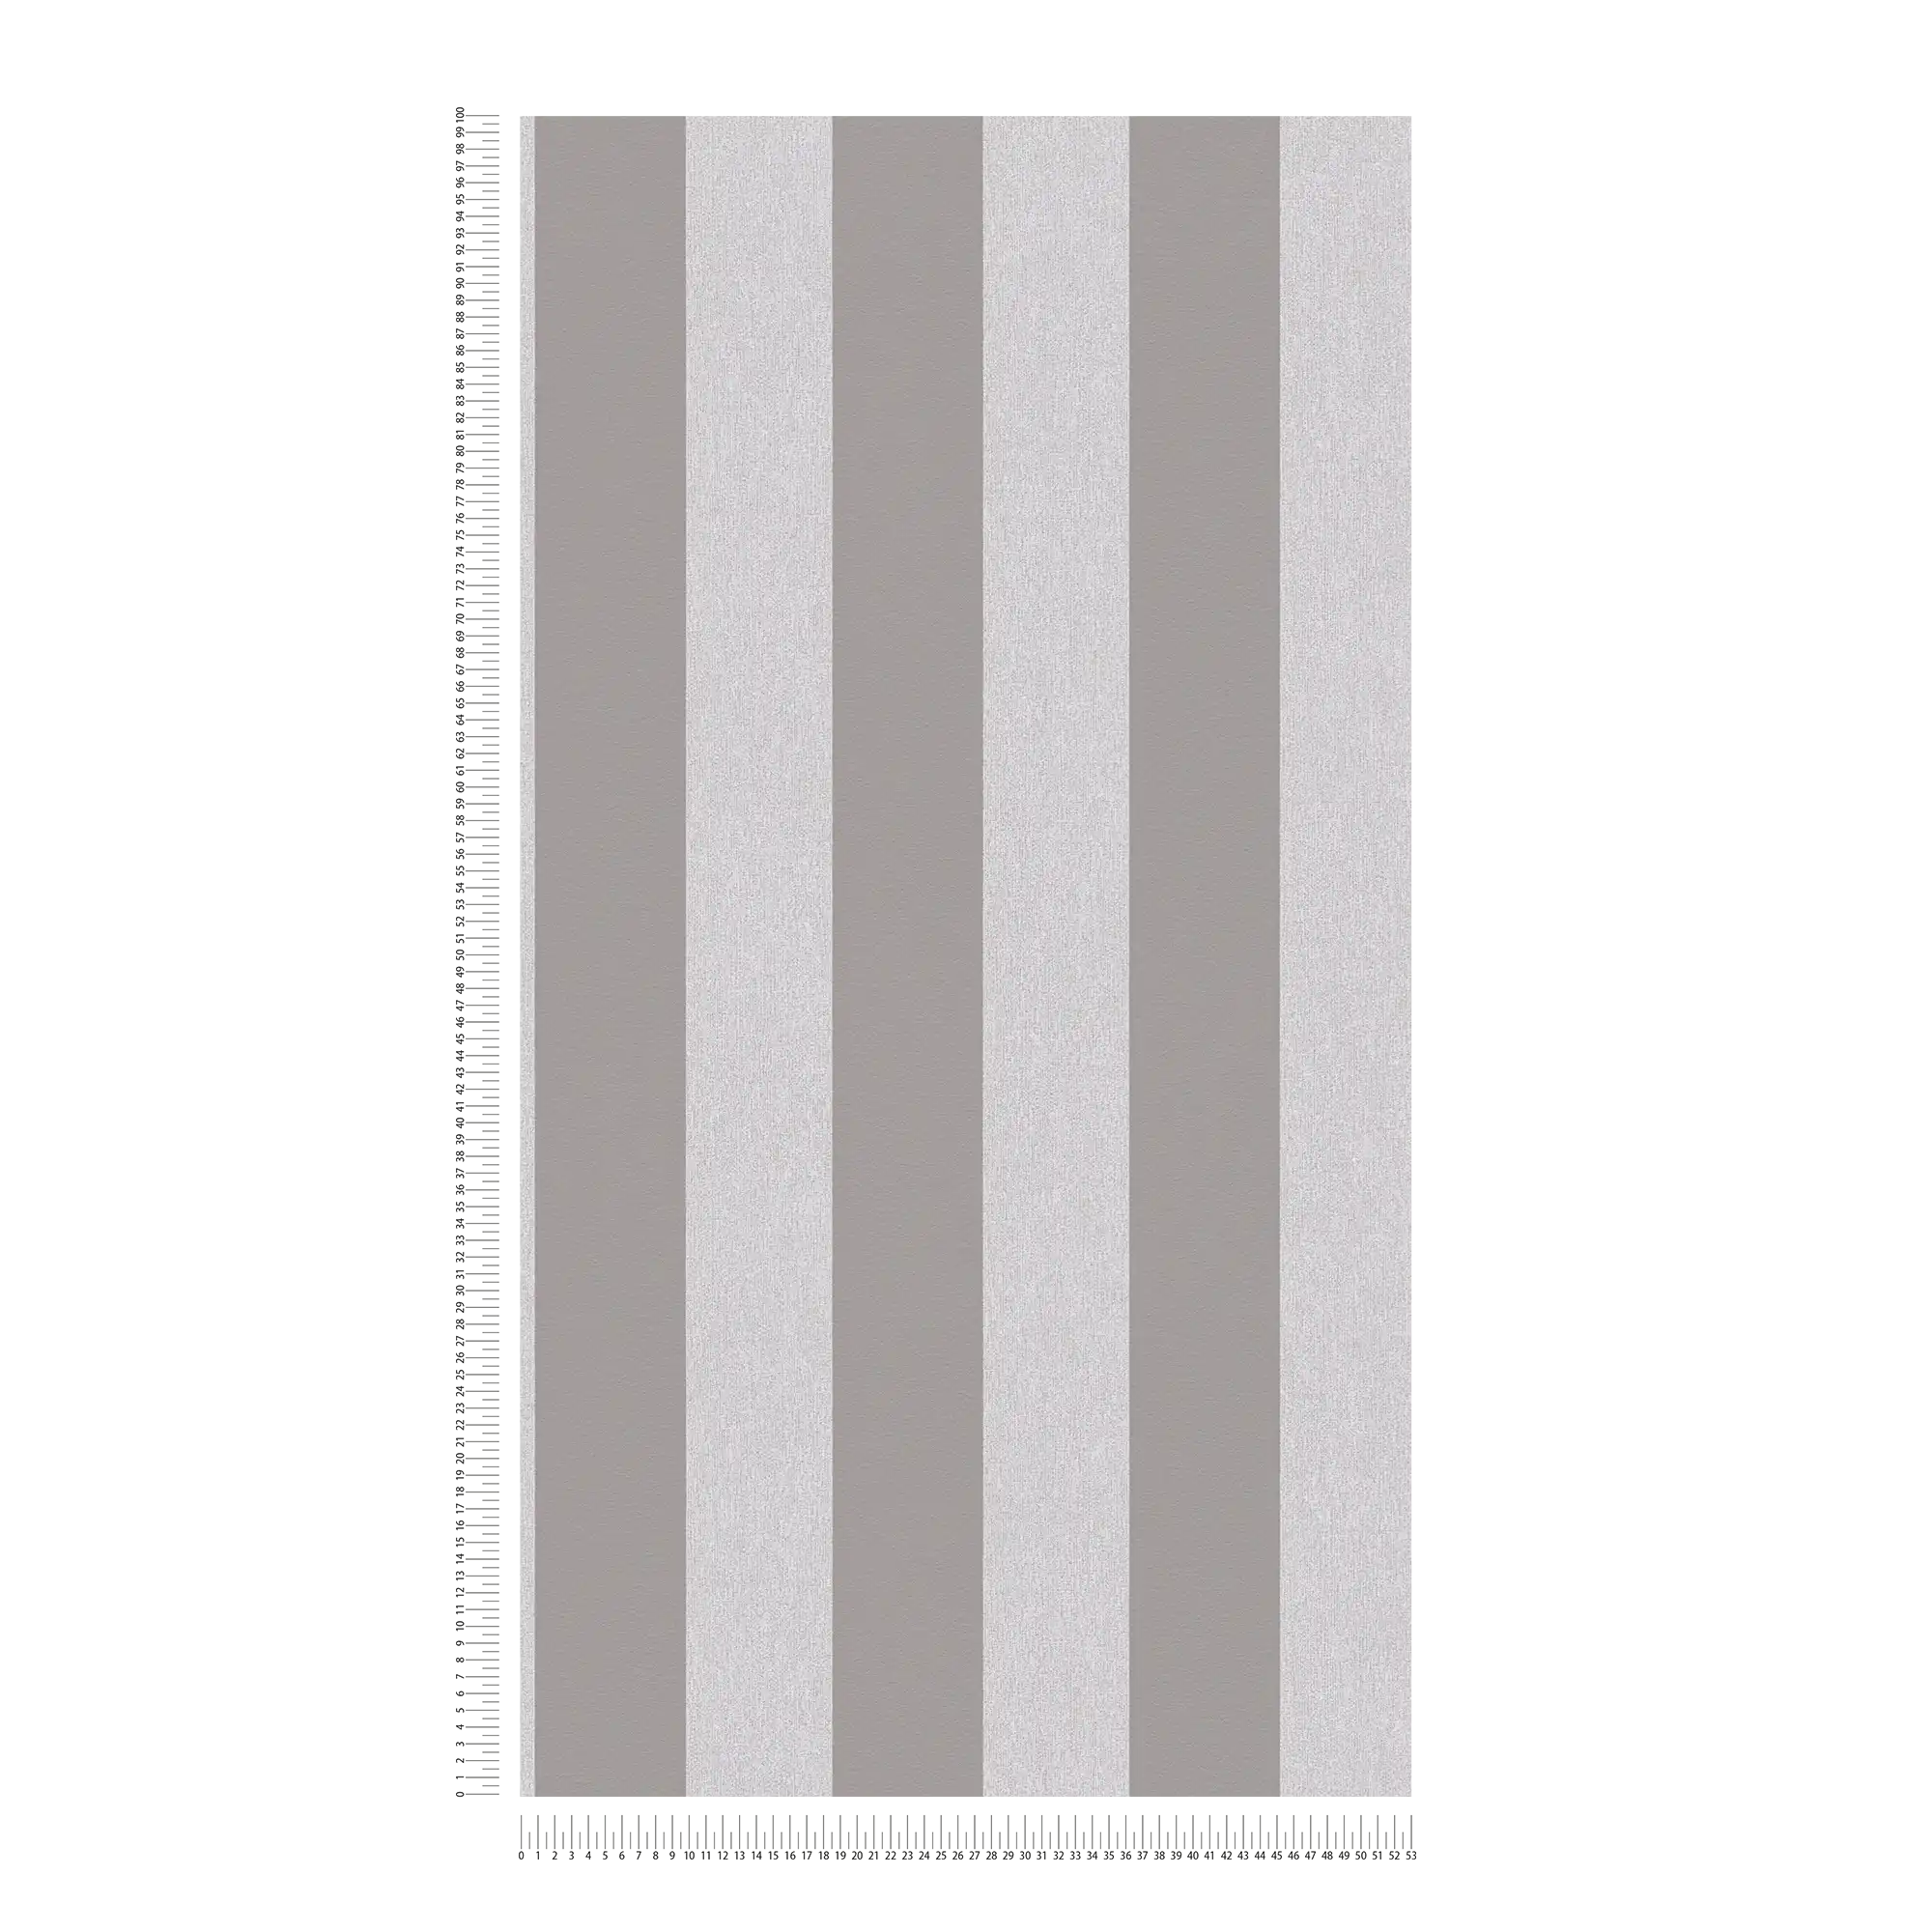             Papier peint à motifs structurés et rayures - gris, gris clair
        